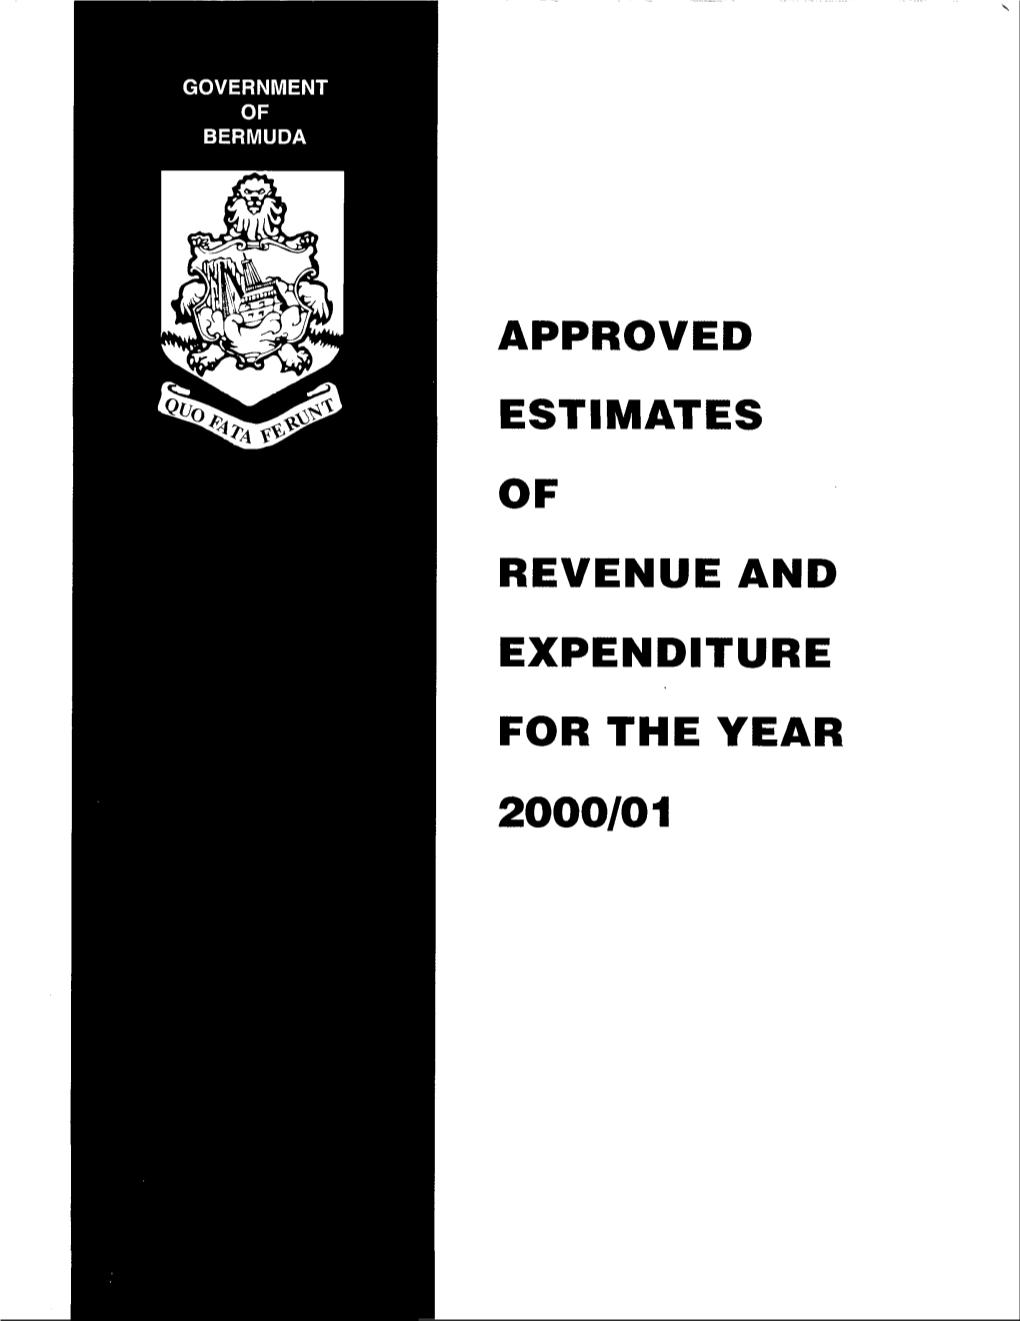 Government of Bermuda Estimates 2000/2001